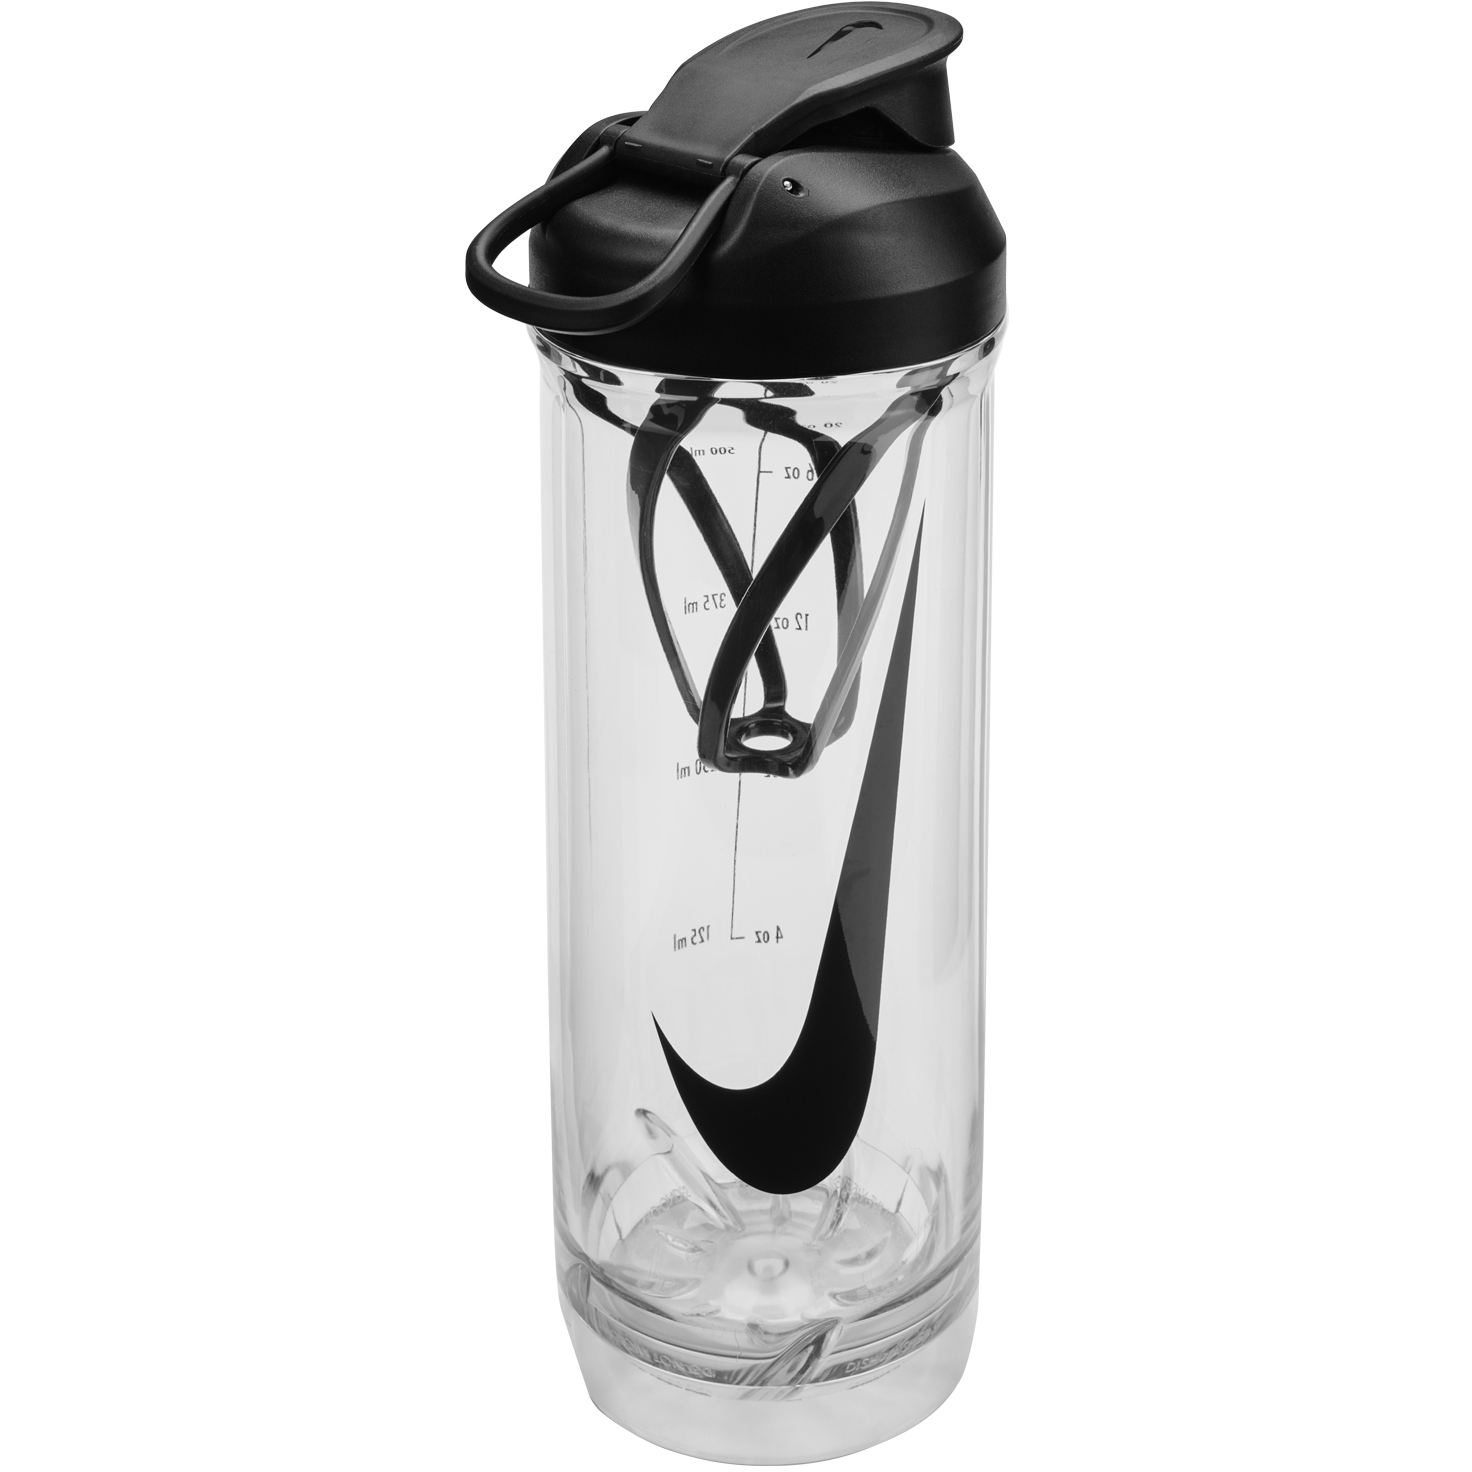 Produktbild von Nike Tritan Recharge Mixflasche 2.0 24 oz / 709ml - transparent/schwarz/schwarz/schwarz 910